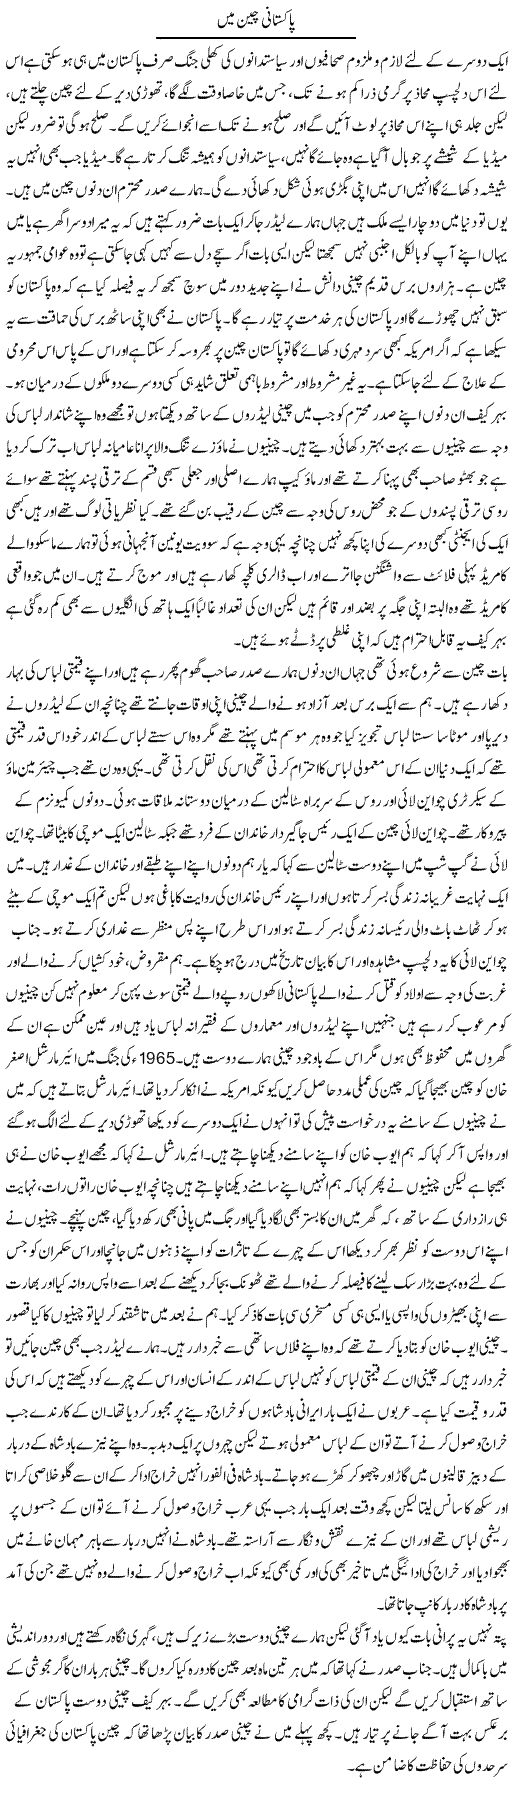 Pakistan China Express Column Abdul Qadir Hasan 11 July 2010